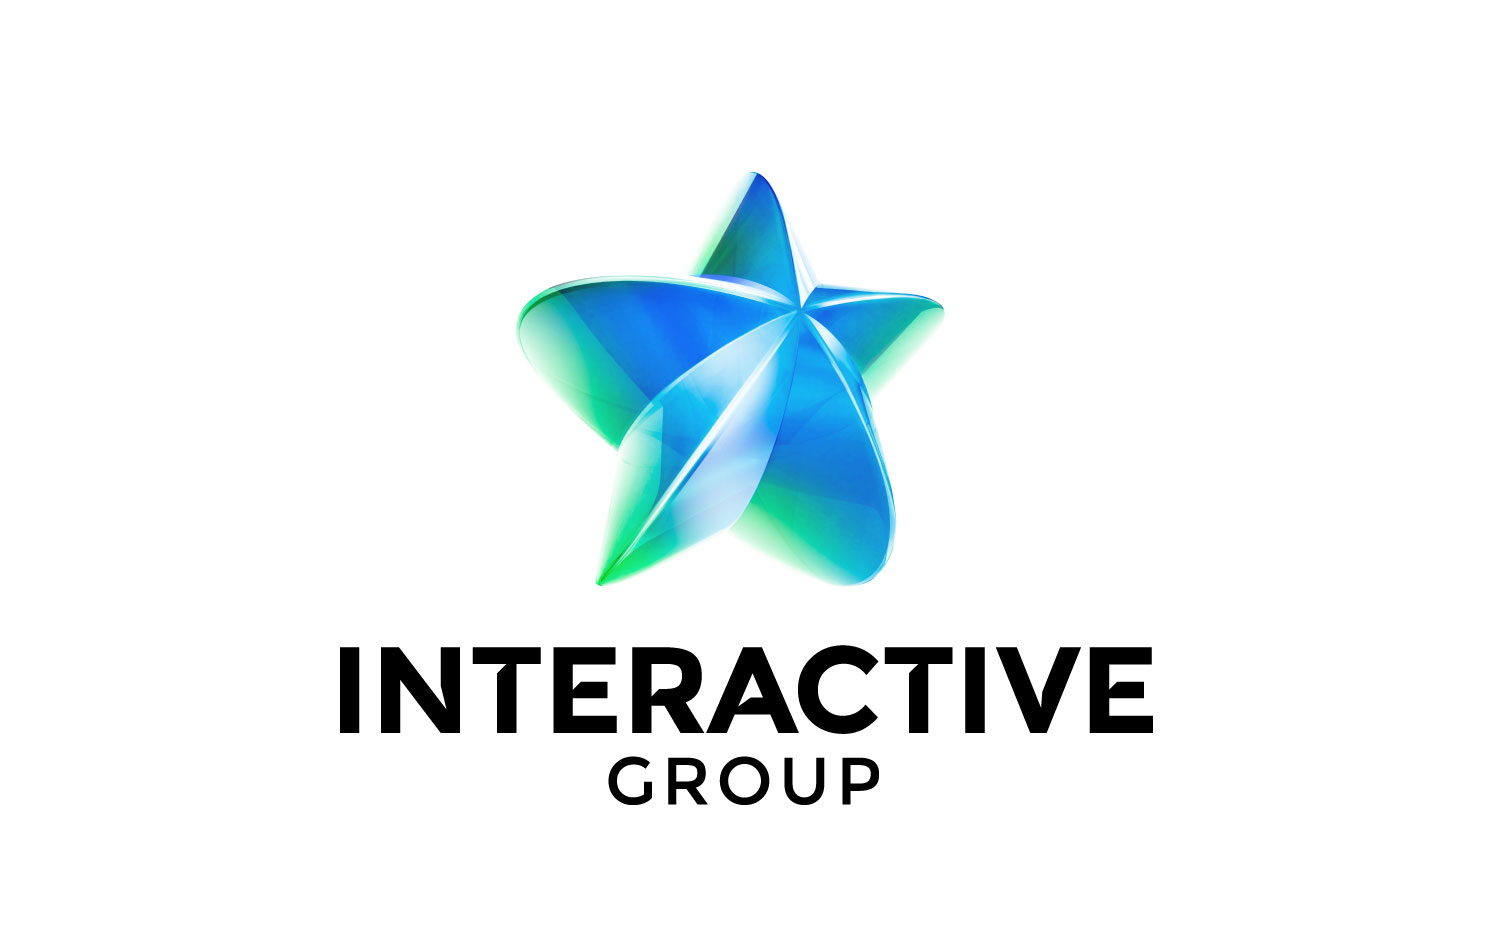 巴基斯坦Interactive Group新品牌形象